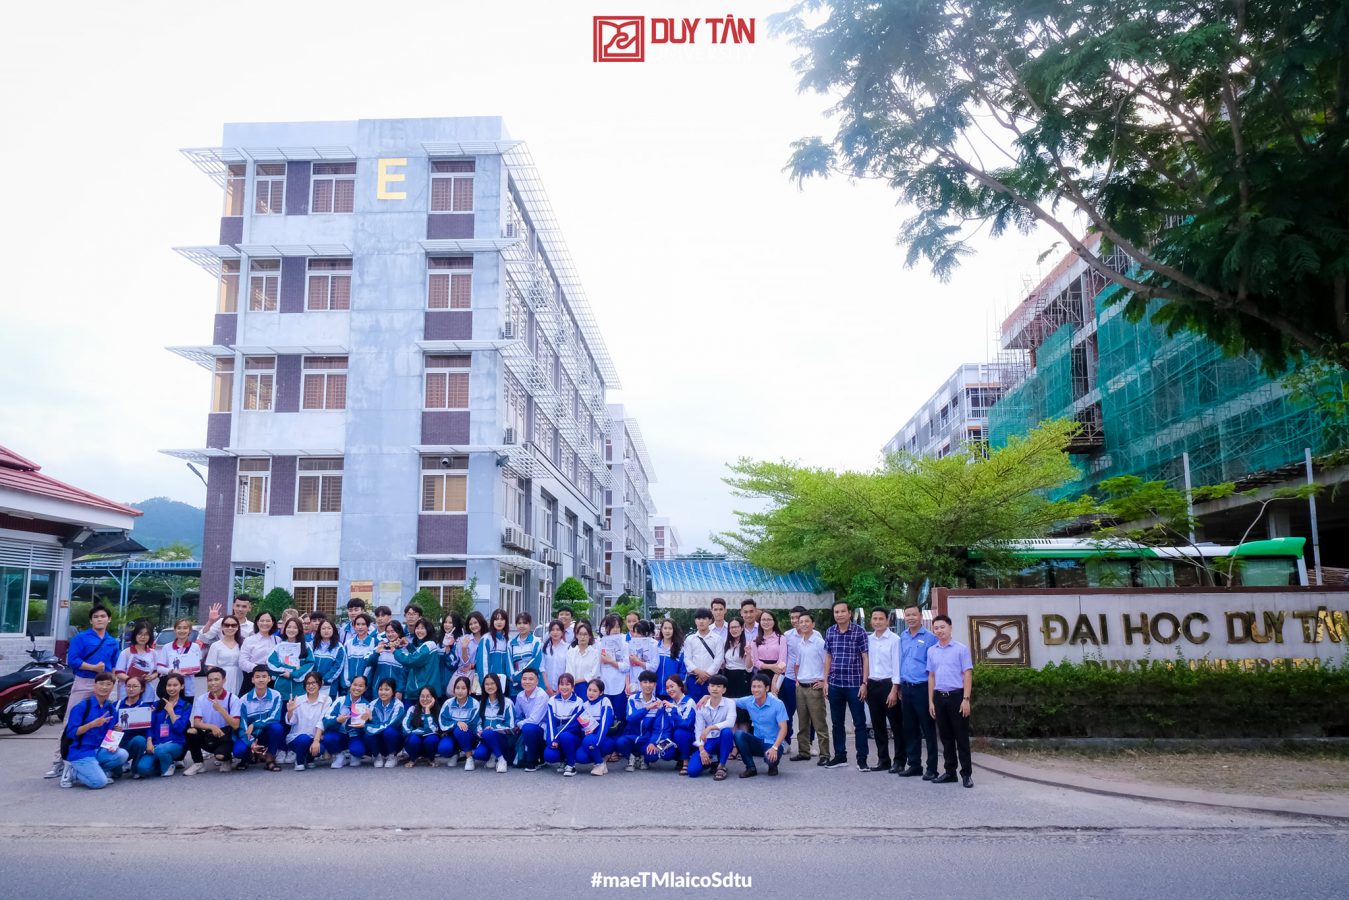 Đại học Duy Tân nổi tiếng là một trong những trường Đại học ở Đà Nẵng có cơ sở vật chất tốt